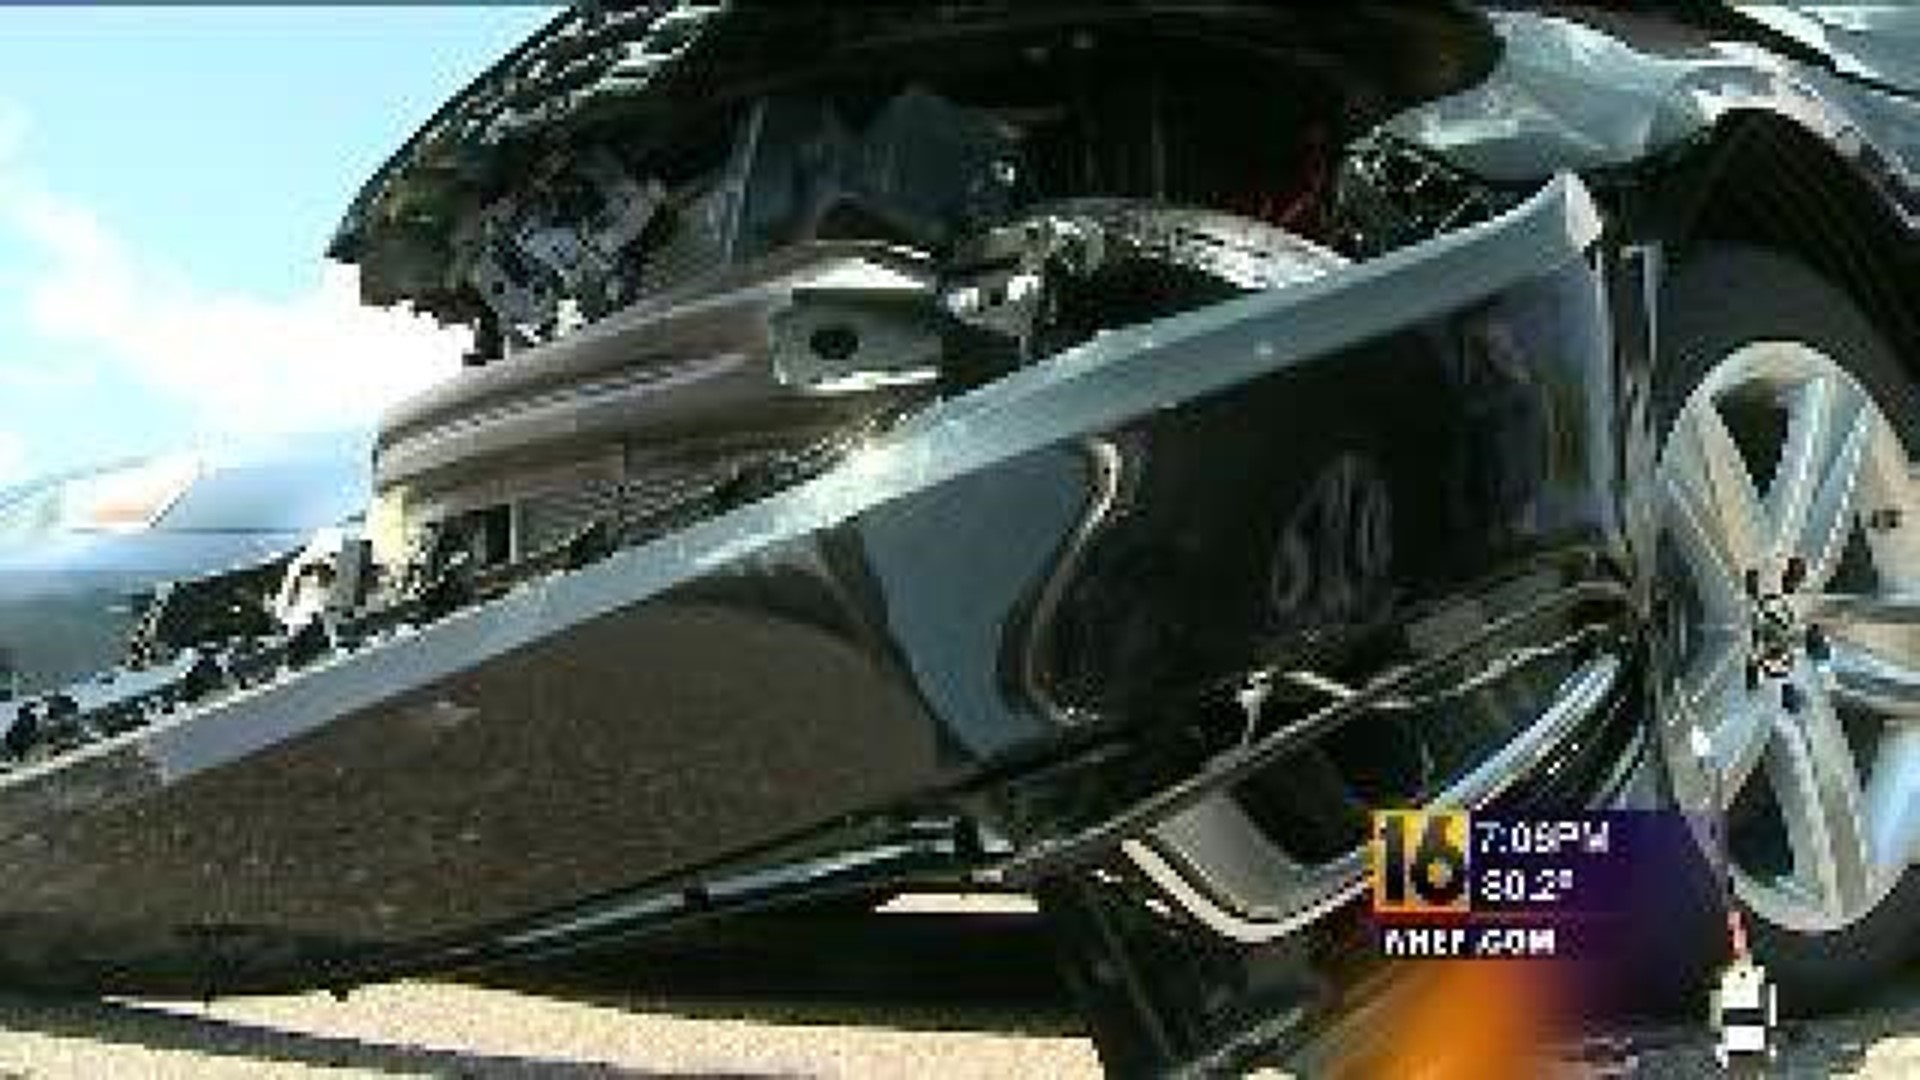 Crash Damages High End Cars at Dealership